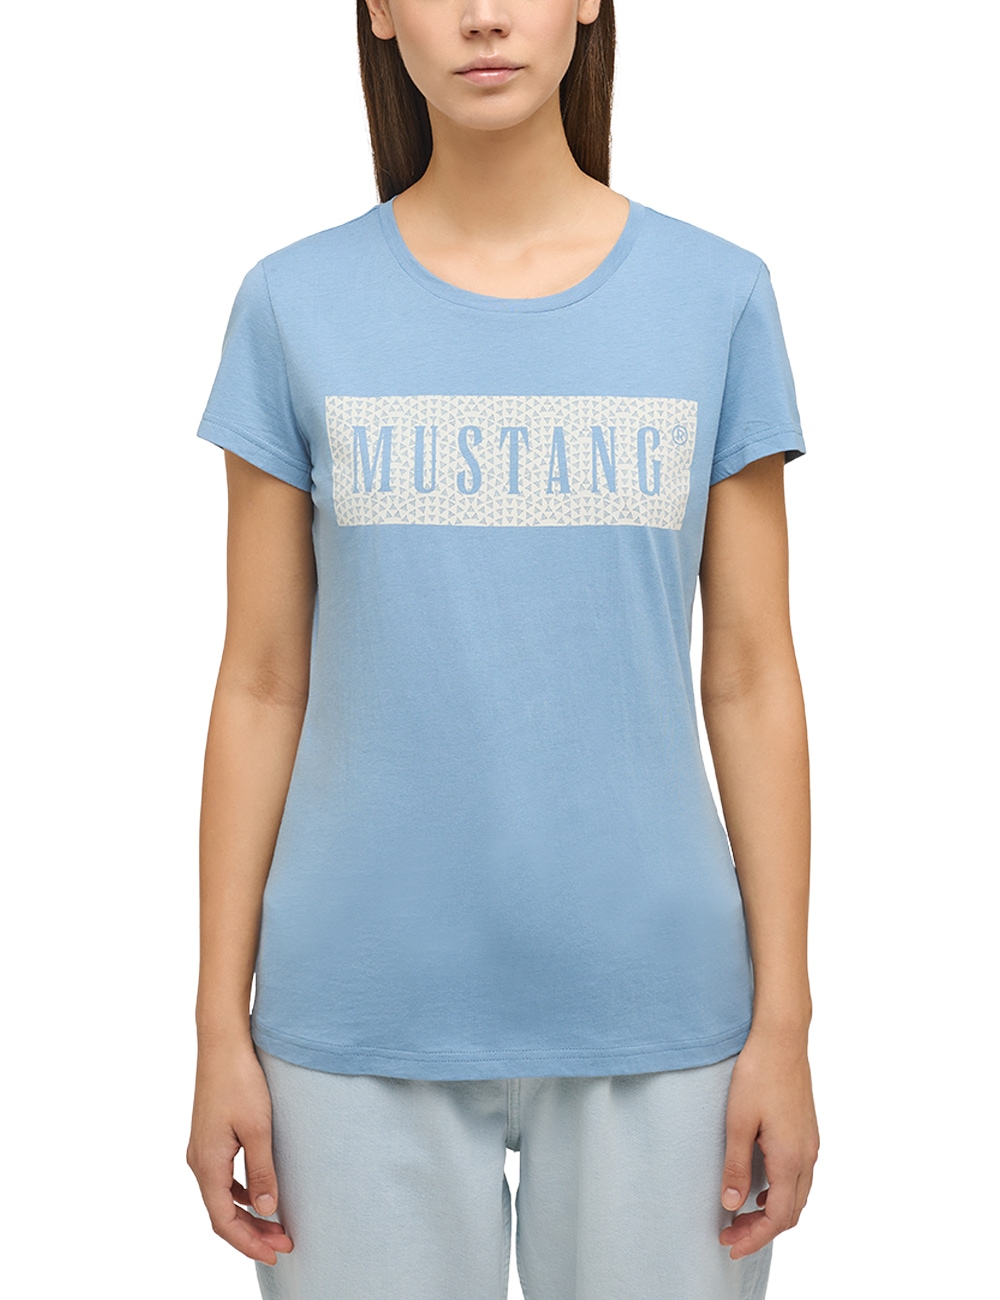 MUSTANG Kurzarmshirt »Mustang Print-Shirt« bestellen bei OTTO